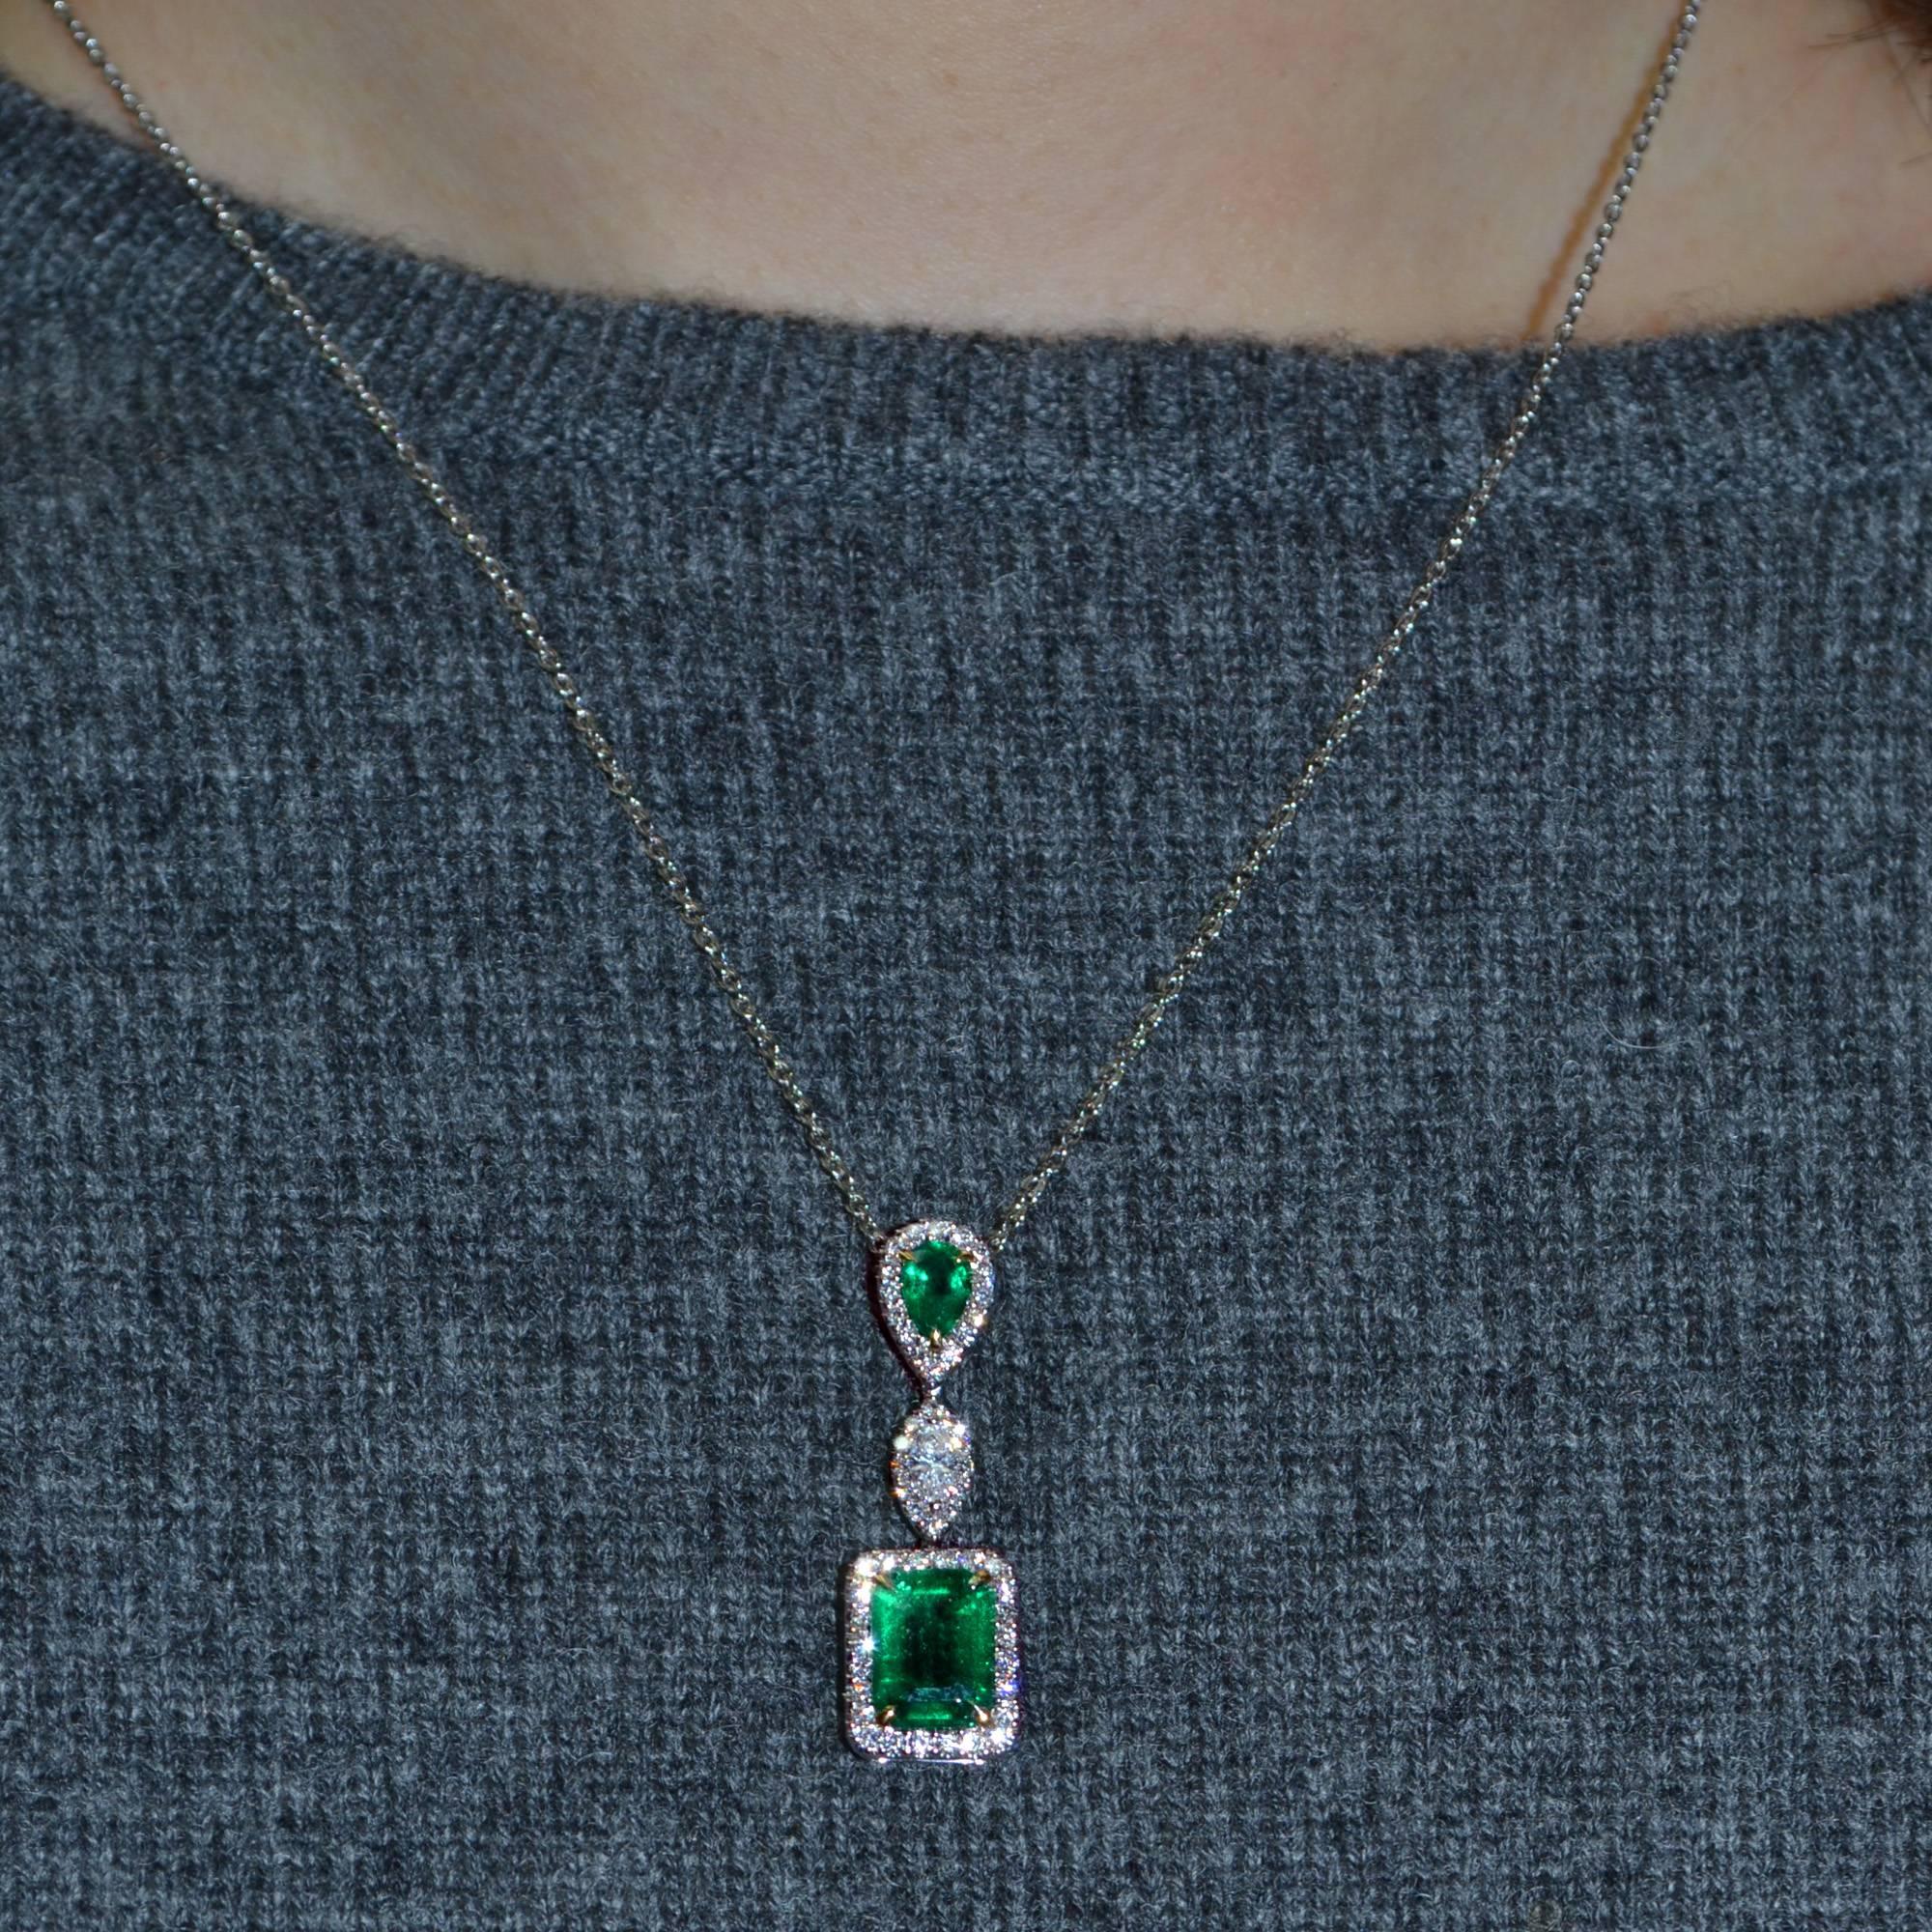 Emerald Cut Emerald Diamond 18 Karat Gold Pendant Necklace For Sale 1